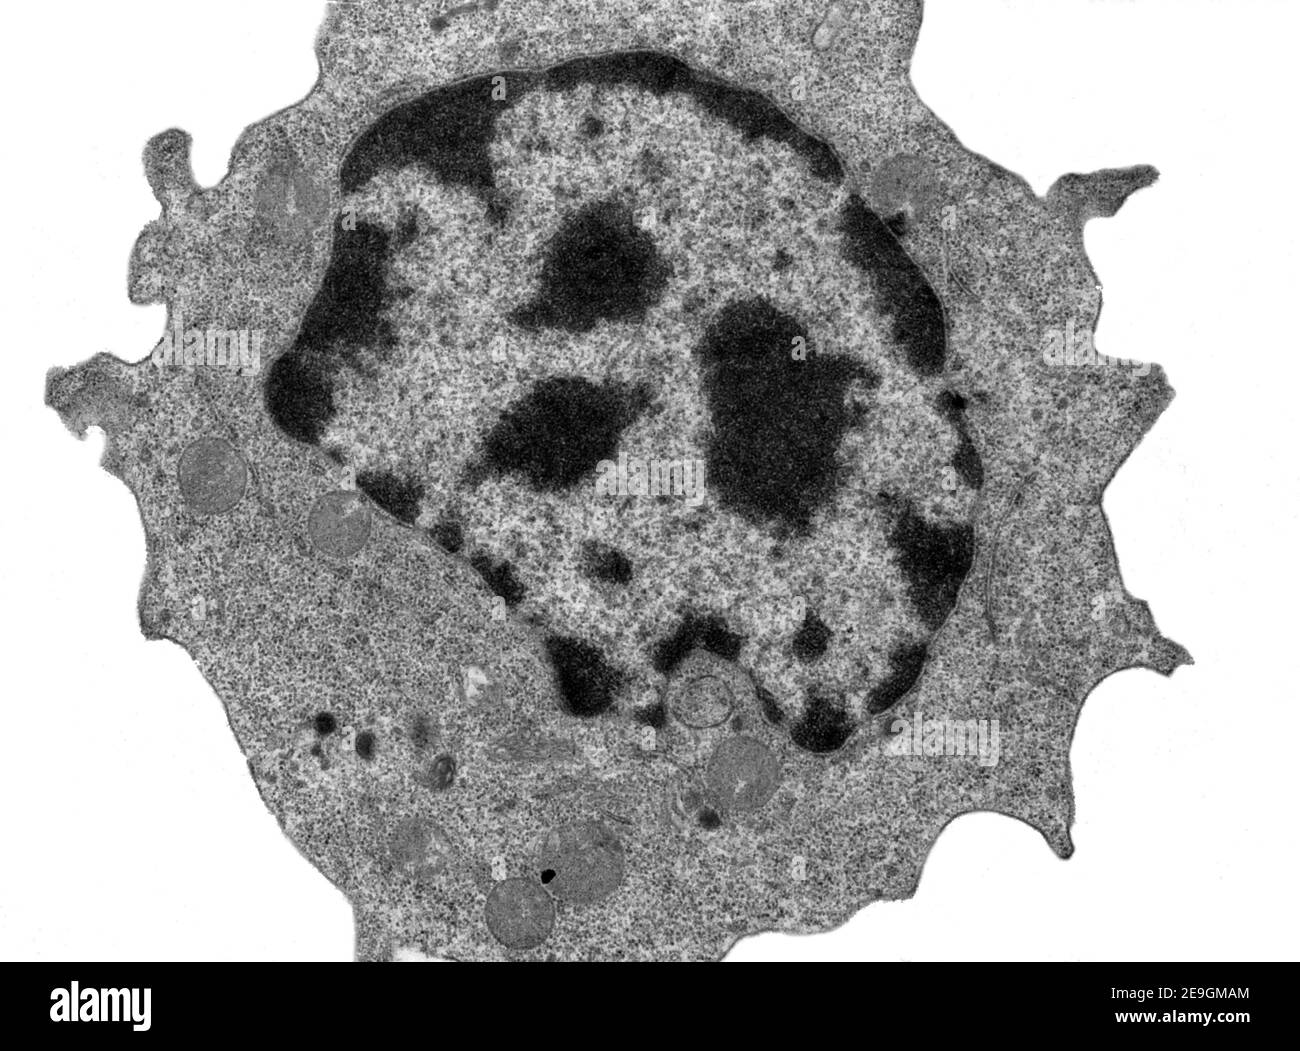 Transmissionselektronenmikroskop (TEM)-Mikrograph zeigt eine mittelgroße Lymphozyte mit kleinen Pseudopodien. Das Zytoplasma enthält viele freie Ribosomen Stockfoto